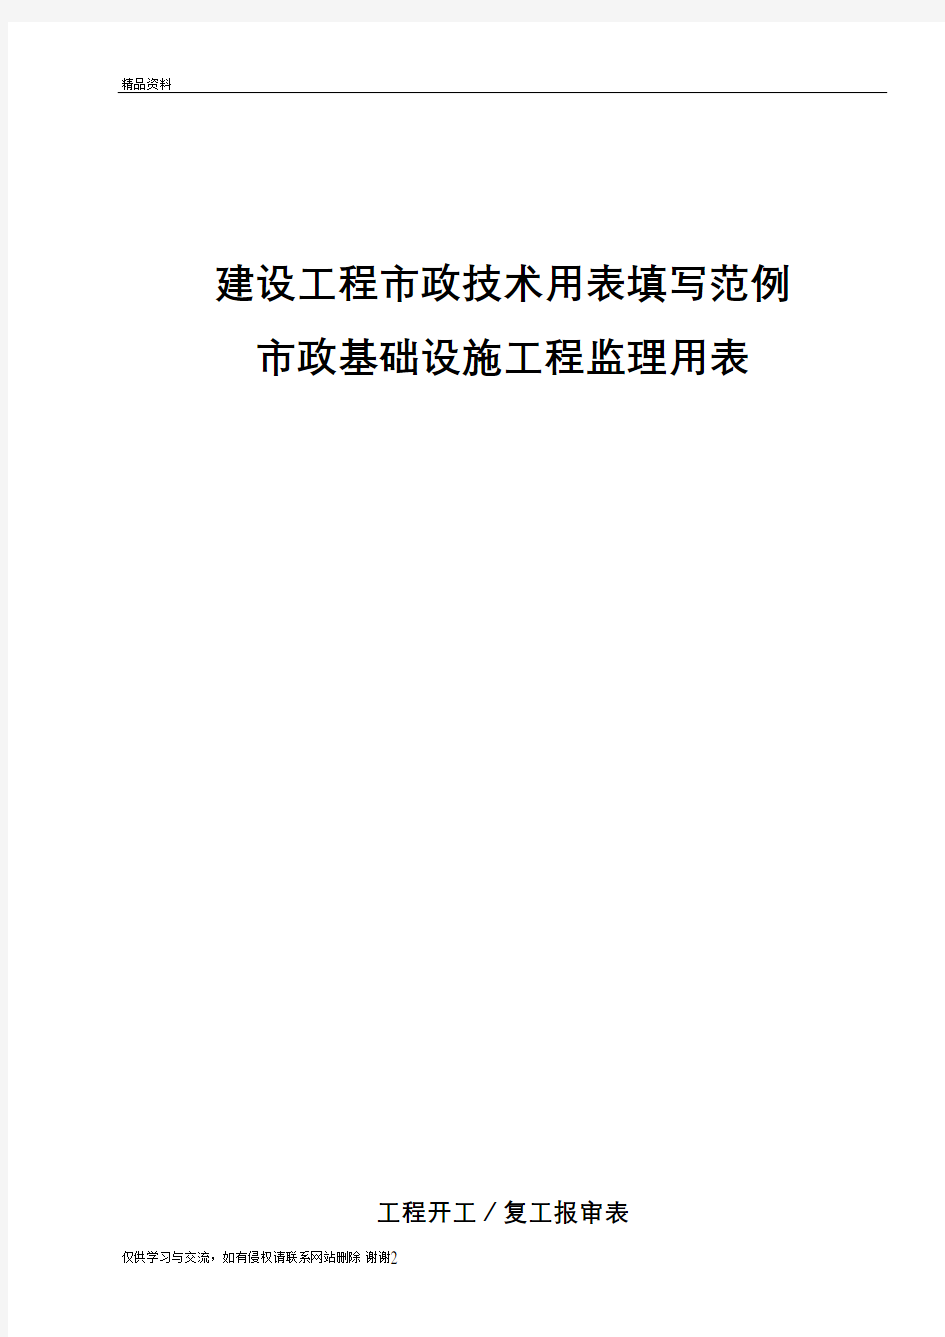 最新新市政表格重庆市市政基础设施工程施工技术用表汇编(监理用表)汇总